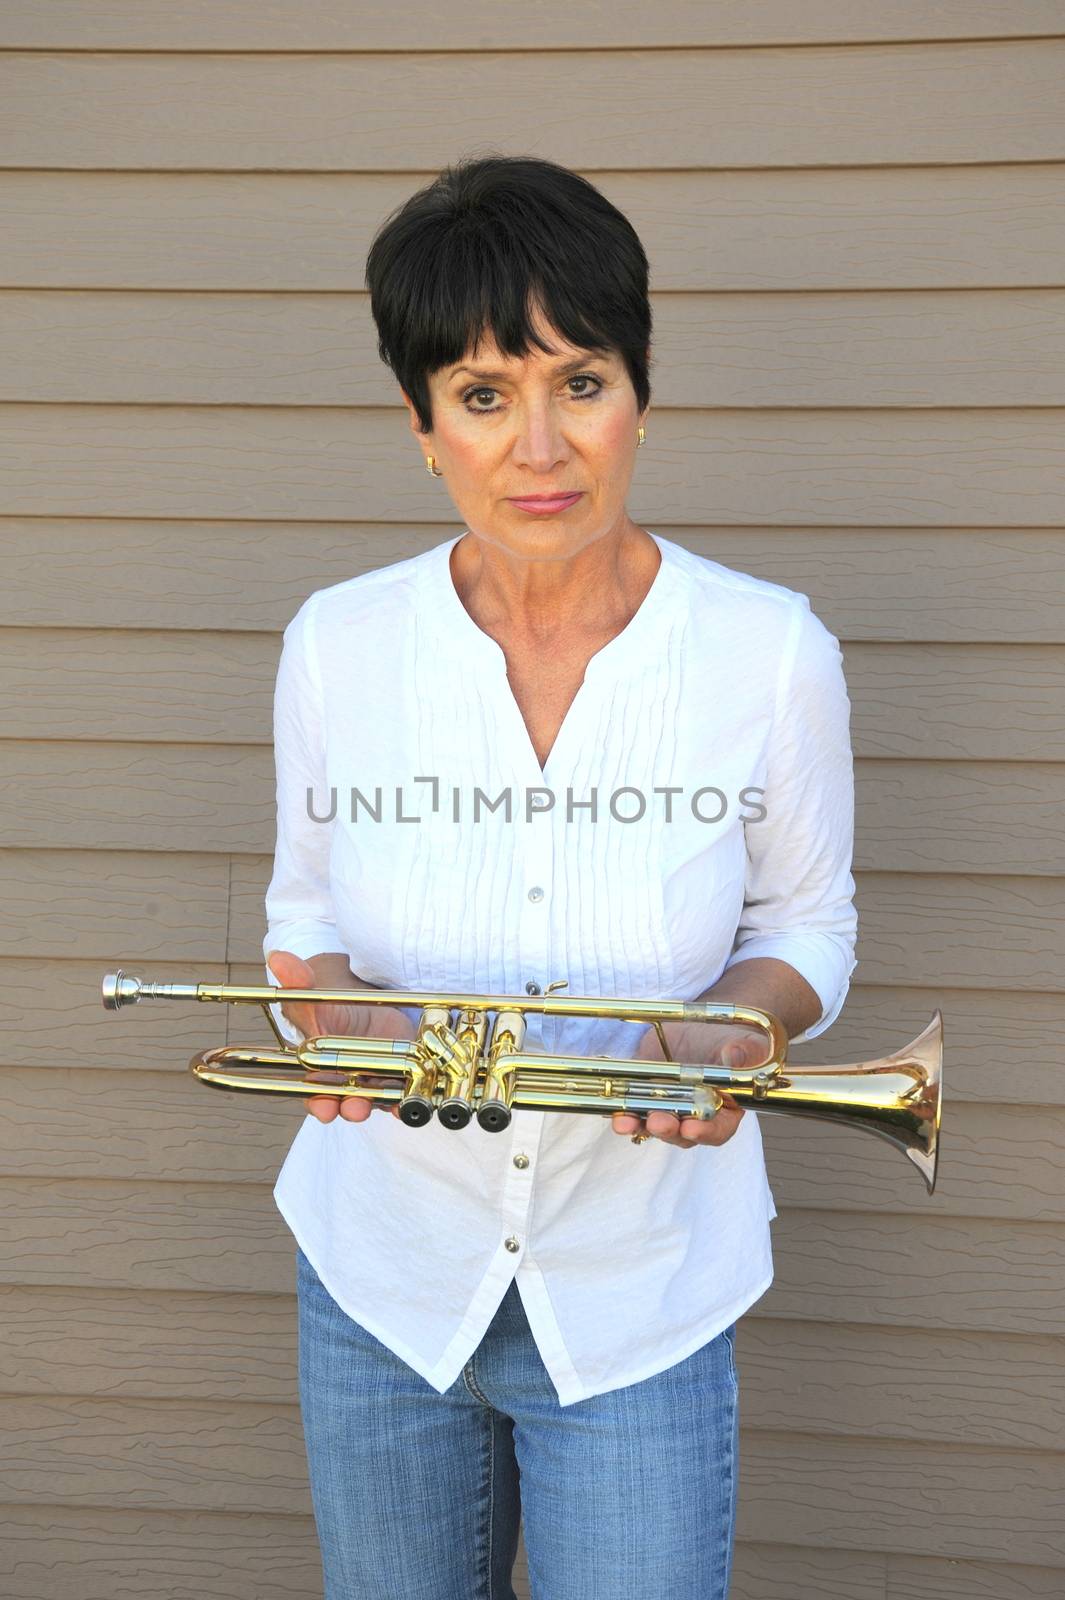 Female trumpet player. by oscarcwilliams